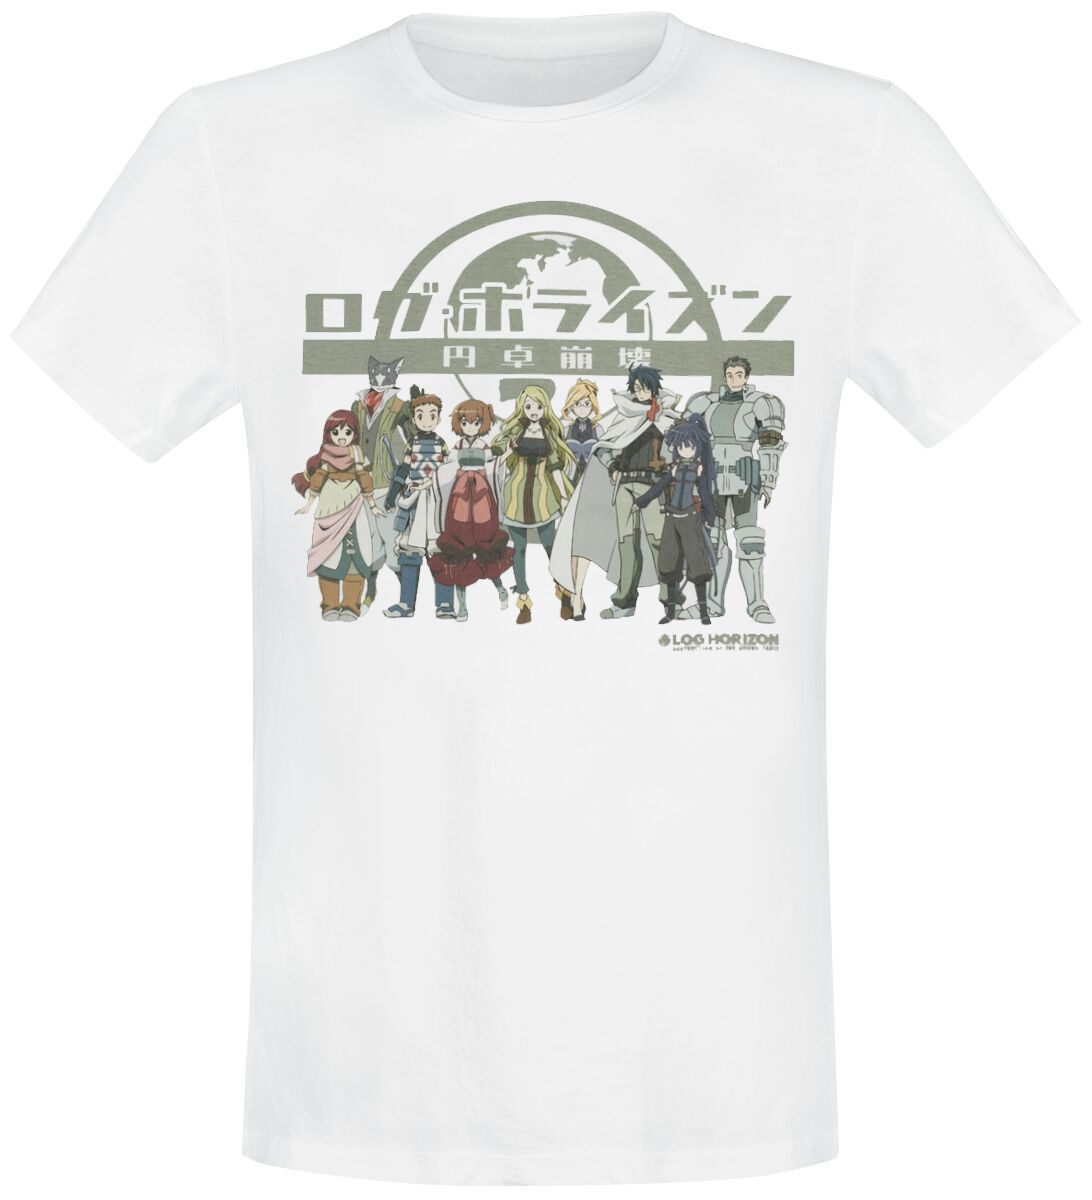 Log Horizon - Anime T-Shirt - Group - S bis L - für Männer - Größe L - weiß  - Lizenzierter Fanartikel